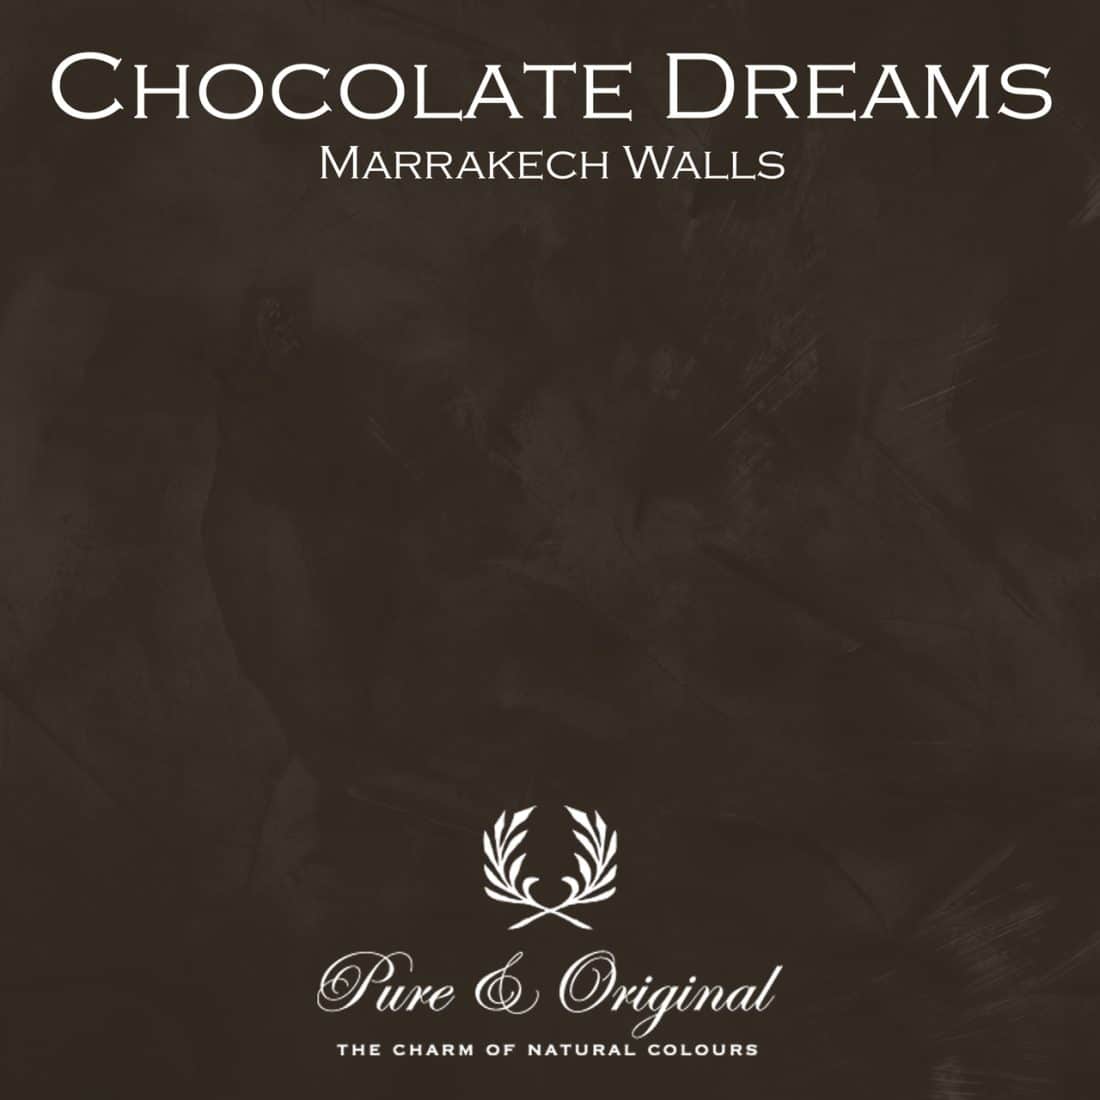 Chocolate Dreams Marrakech Walls Pure Original